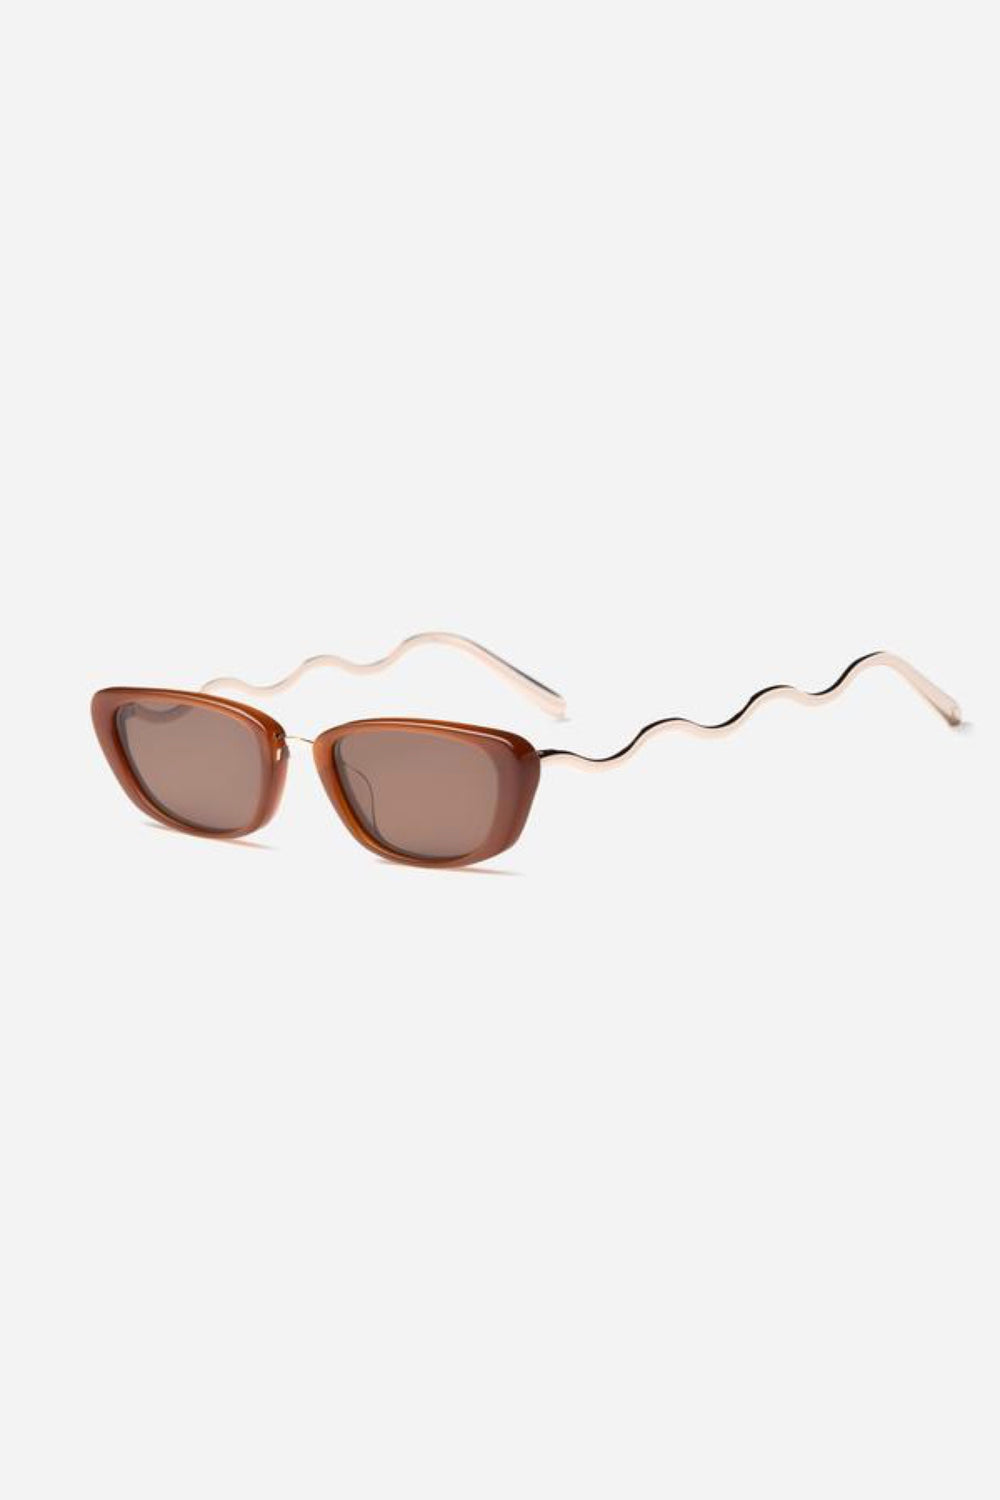 Chocolate Cigarello Sunglasses